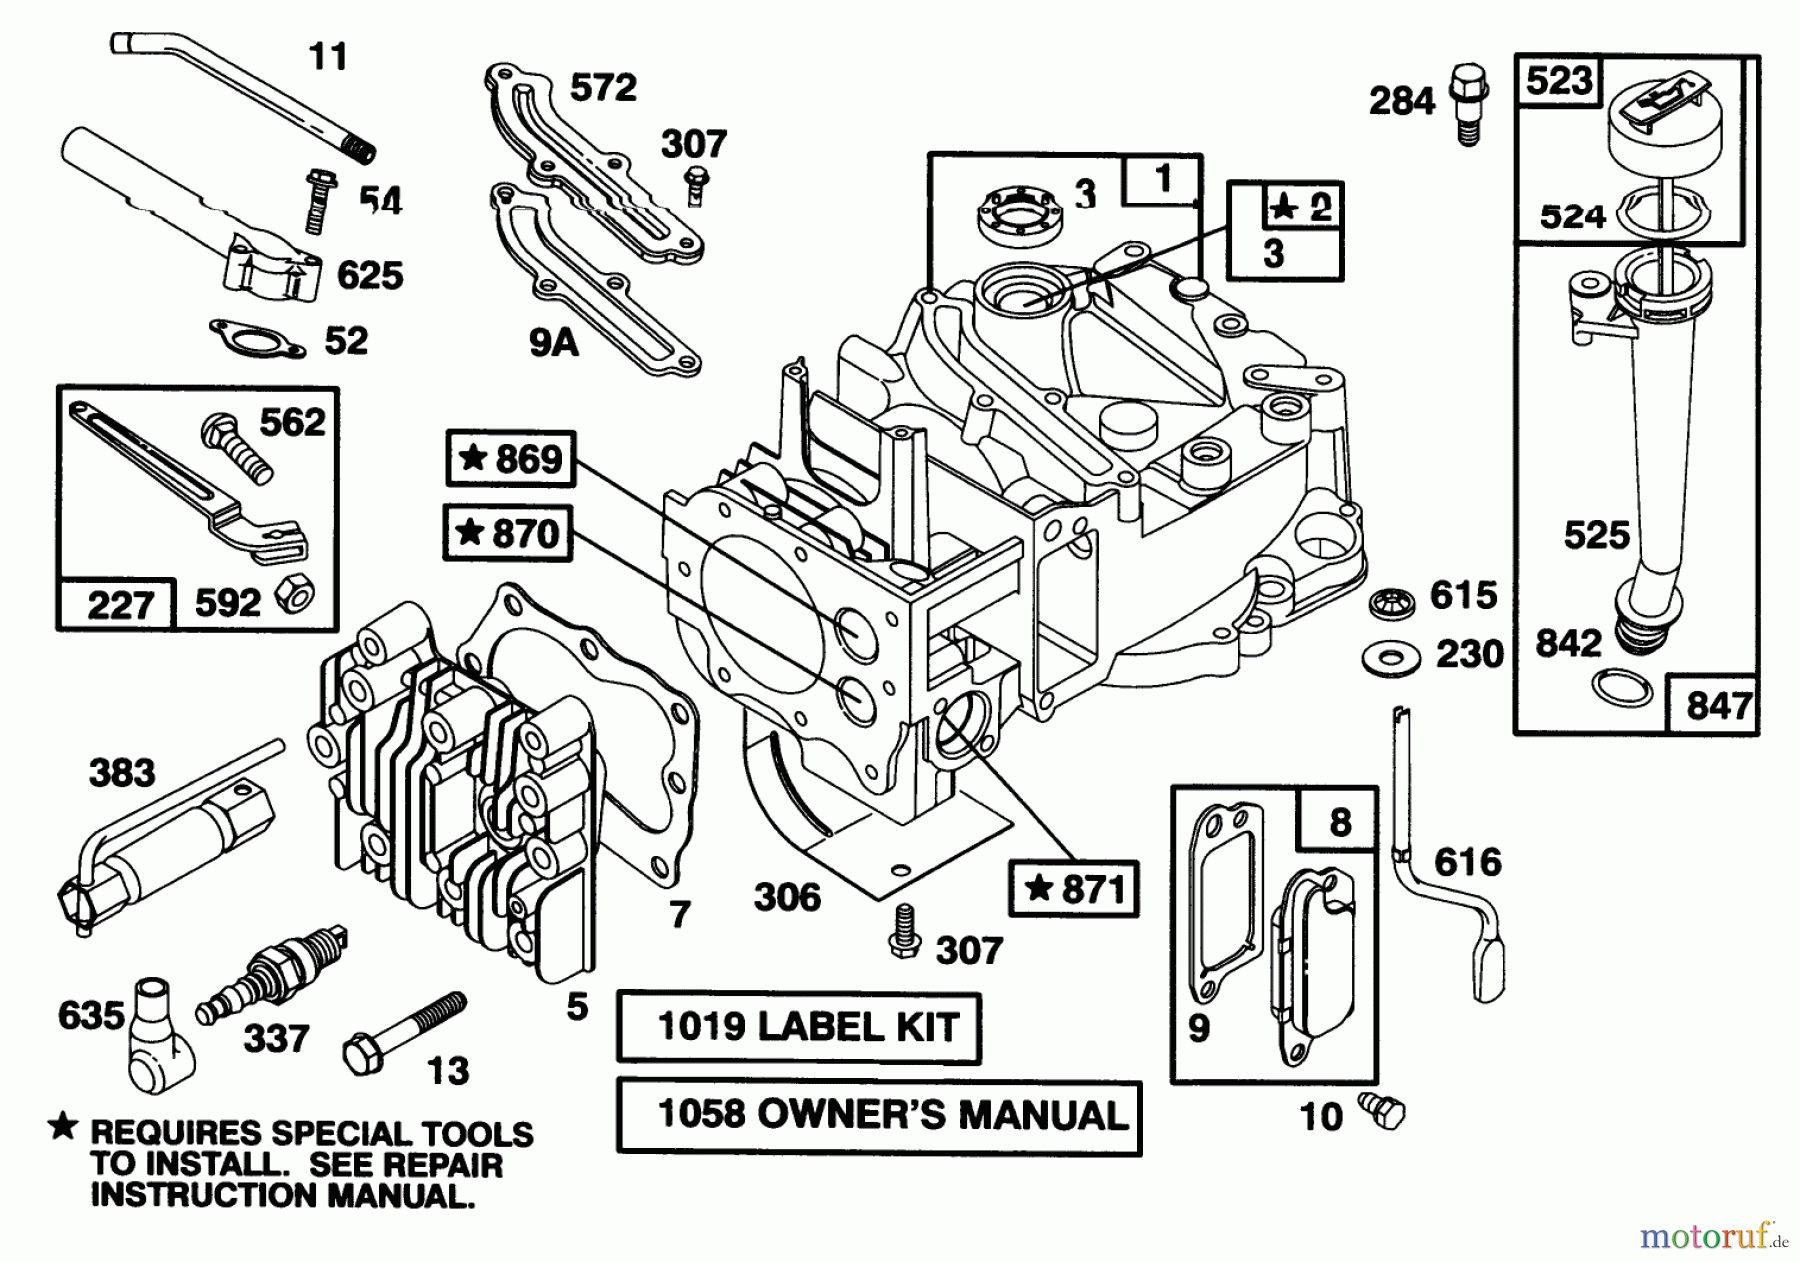  Toro Neu Mowers, Walk-Behind Seite 1 16400 - Toro Lawnmower, 1995 (5900001-5999999) ENGINE BRIGGS & STRATTON MODEL 127702-0645-01 #1